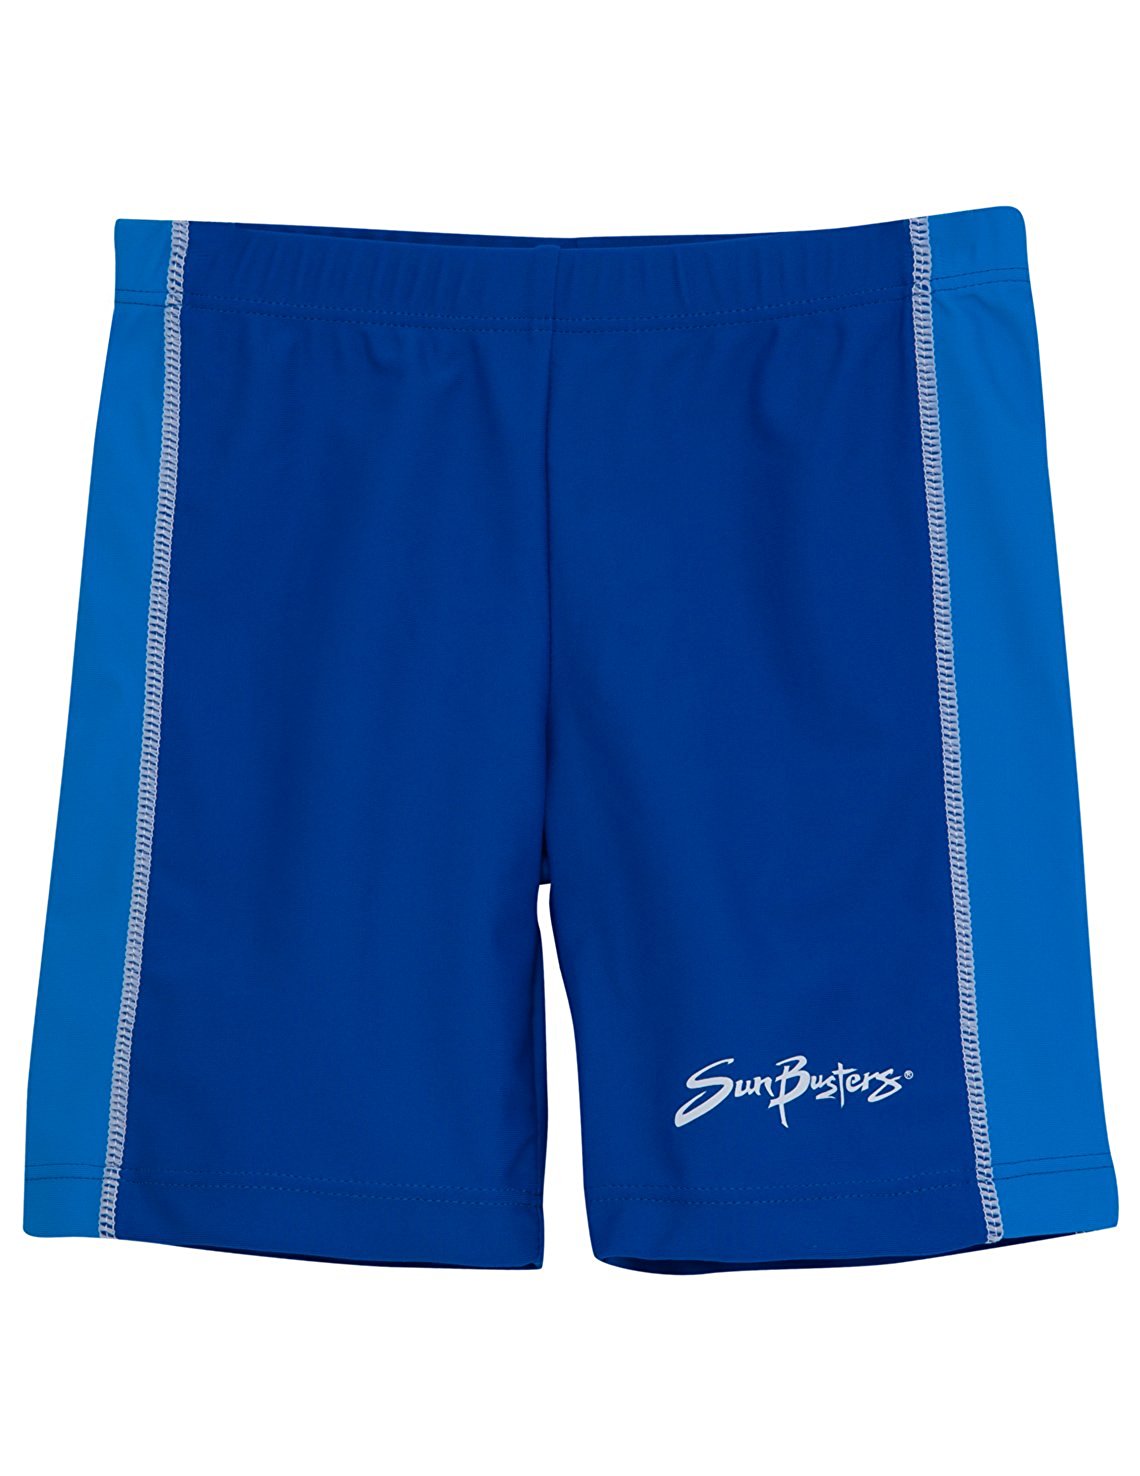 swim short amazon.com: sunbusters boys swim shorts 12 mos - 12 yrs, upf 50+ sun kexhfgs